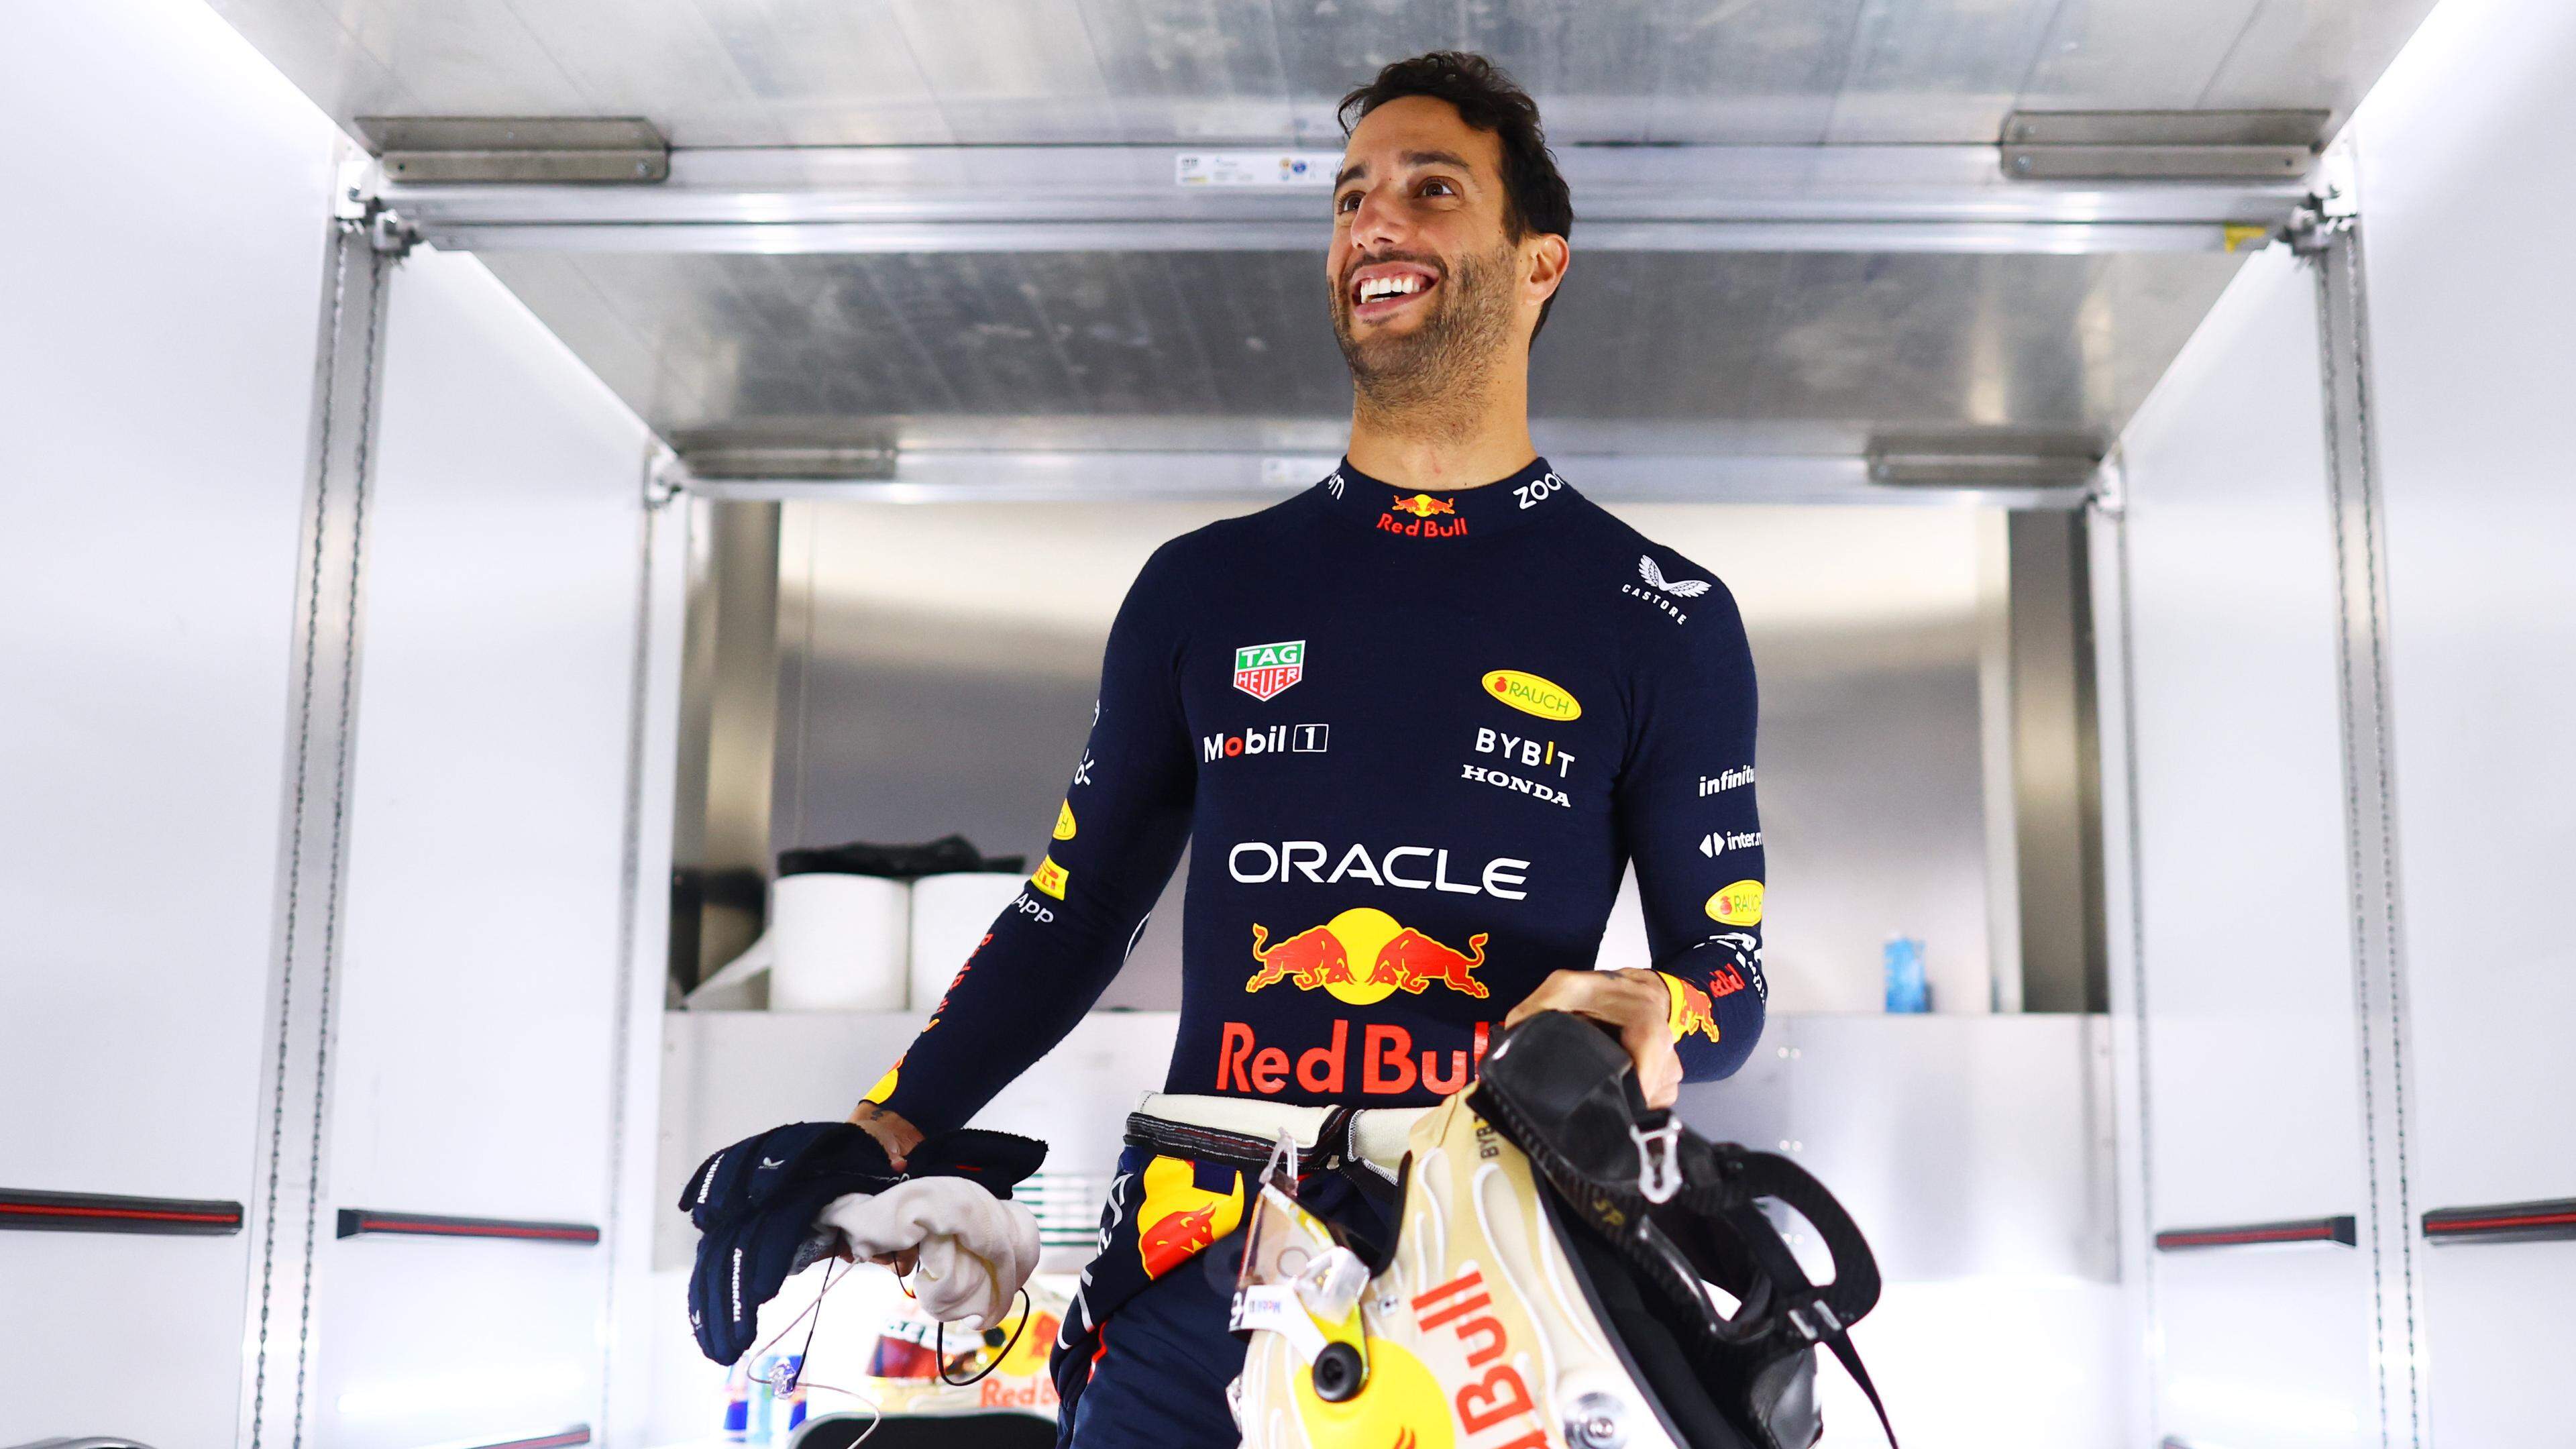 Die positive Ausstrahlung von Daniel Ricciardo wird in Formel-1-Kreisen geschätzt.